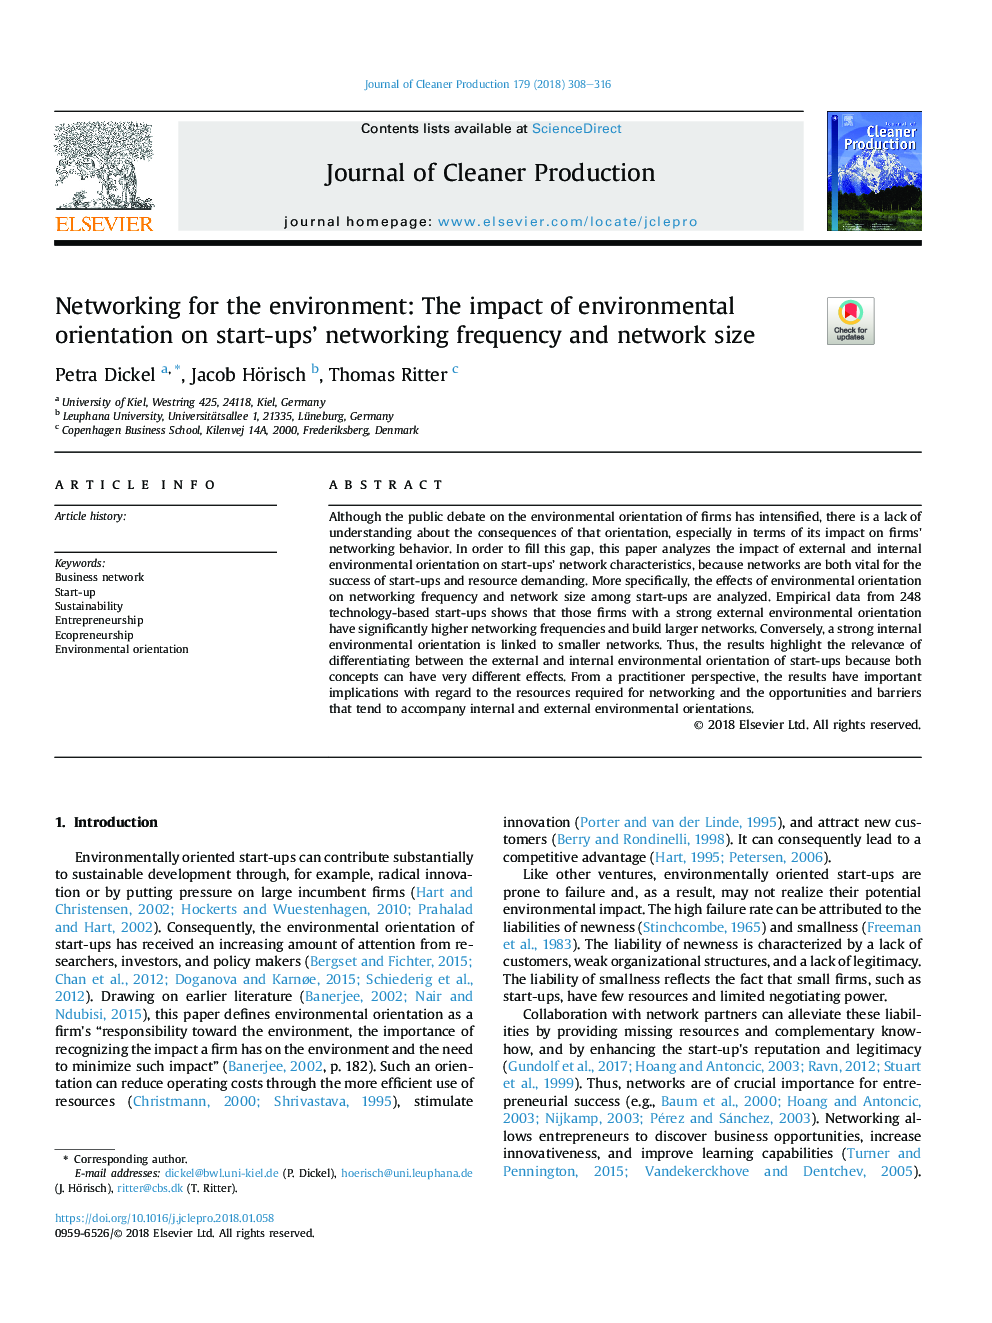 شبکه برای محیط زیست: تاثیر محیط زیست بر فرکانس شبکه های مبتنی بر شبکه و اندازه شبکه 